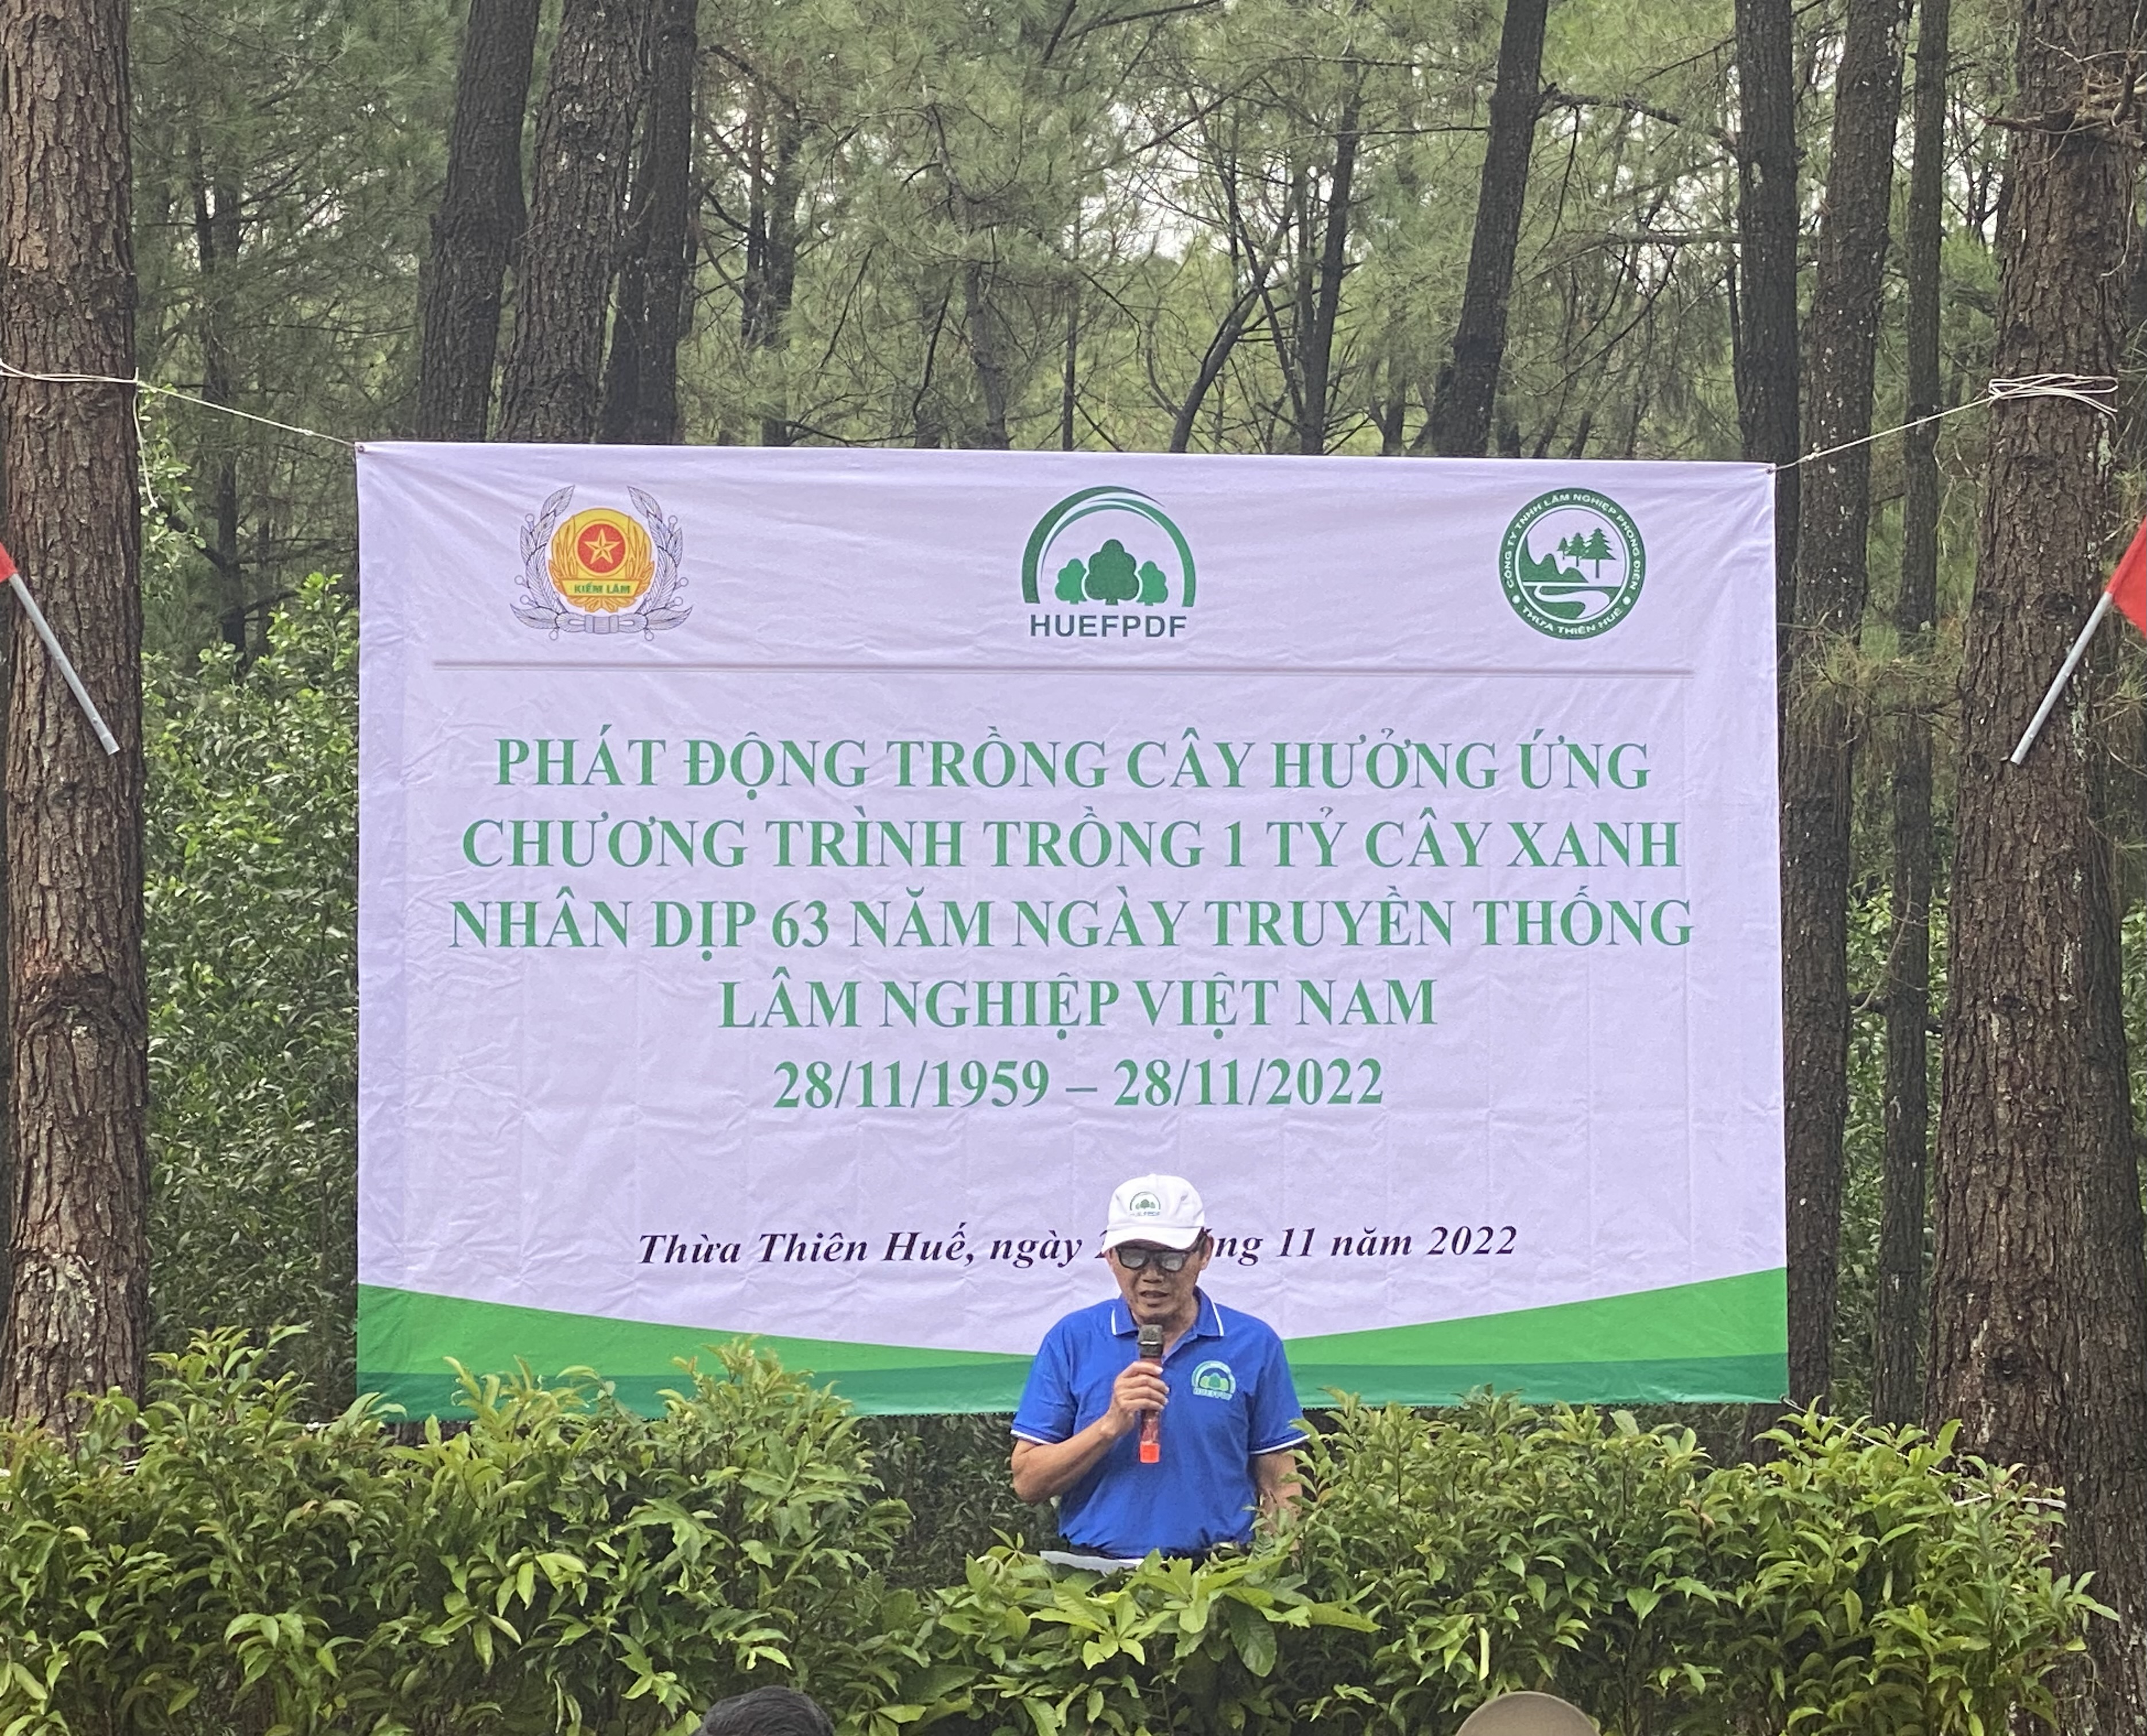 Quỹ Bảo vệ và Phát triển rừng tỉnh Thừa Thiên Huế trồng cây hưởng ứng Chương trình trồng 1 tỷ cây xanh của Thủ tướng Chính phủ